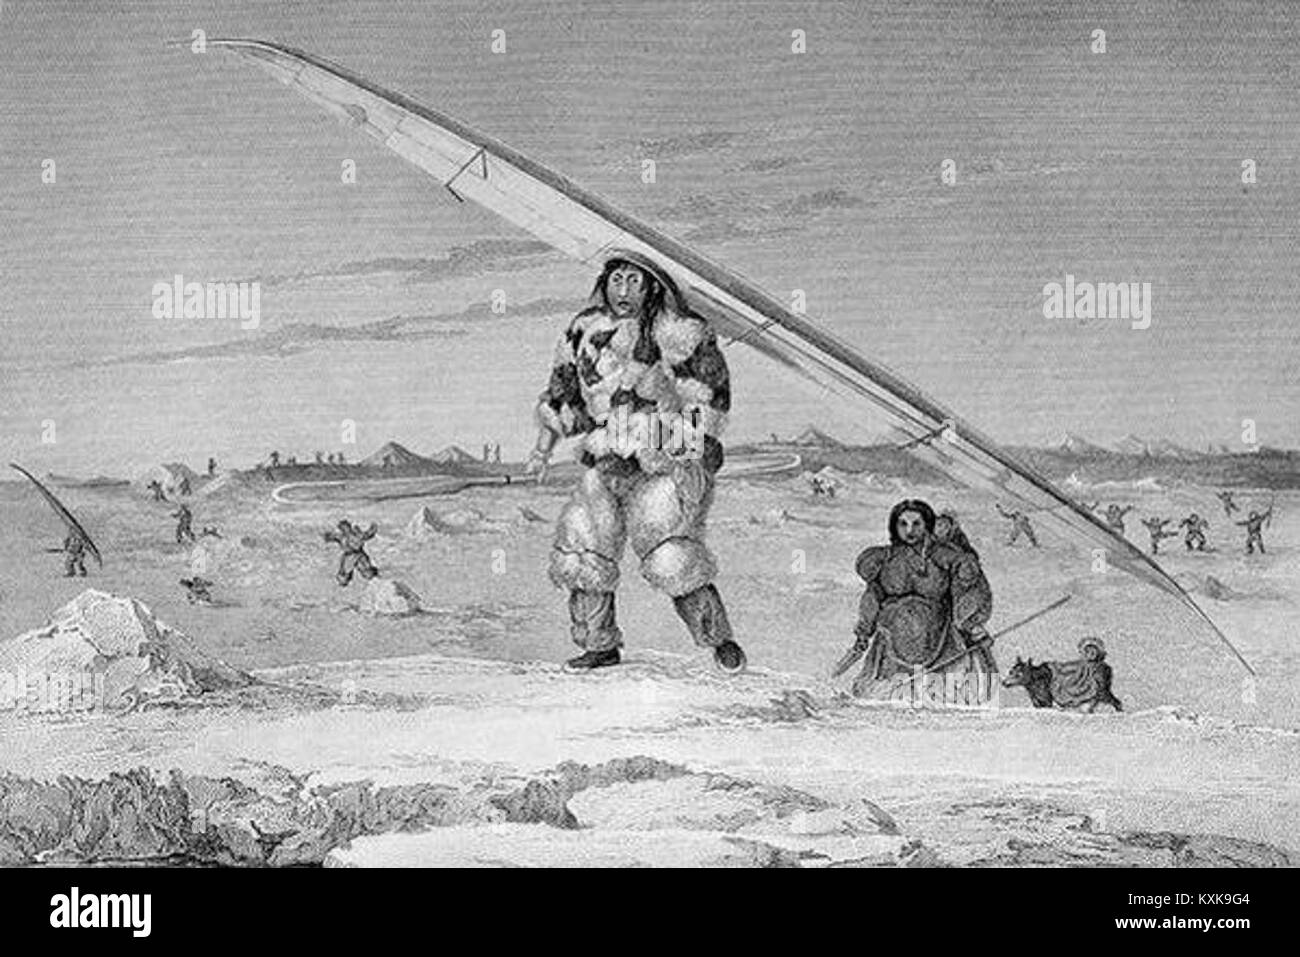 Un d'igloolik eskimaux portant un blouson en peau d'oiseau, portant son canot sur l'eau Banque D'Images